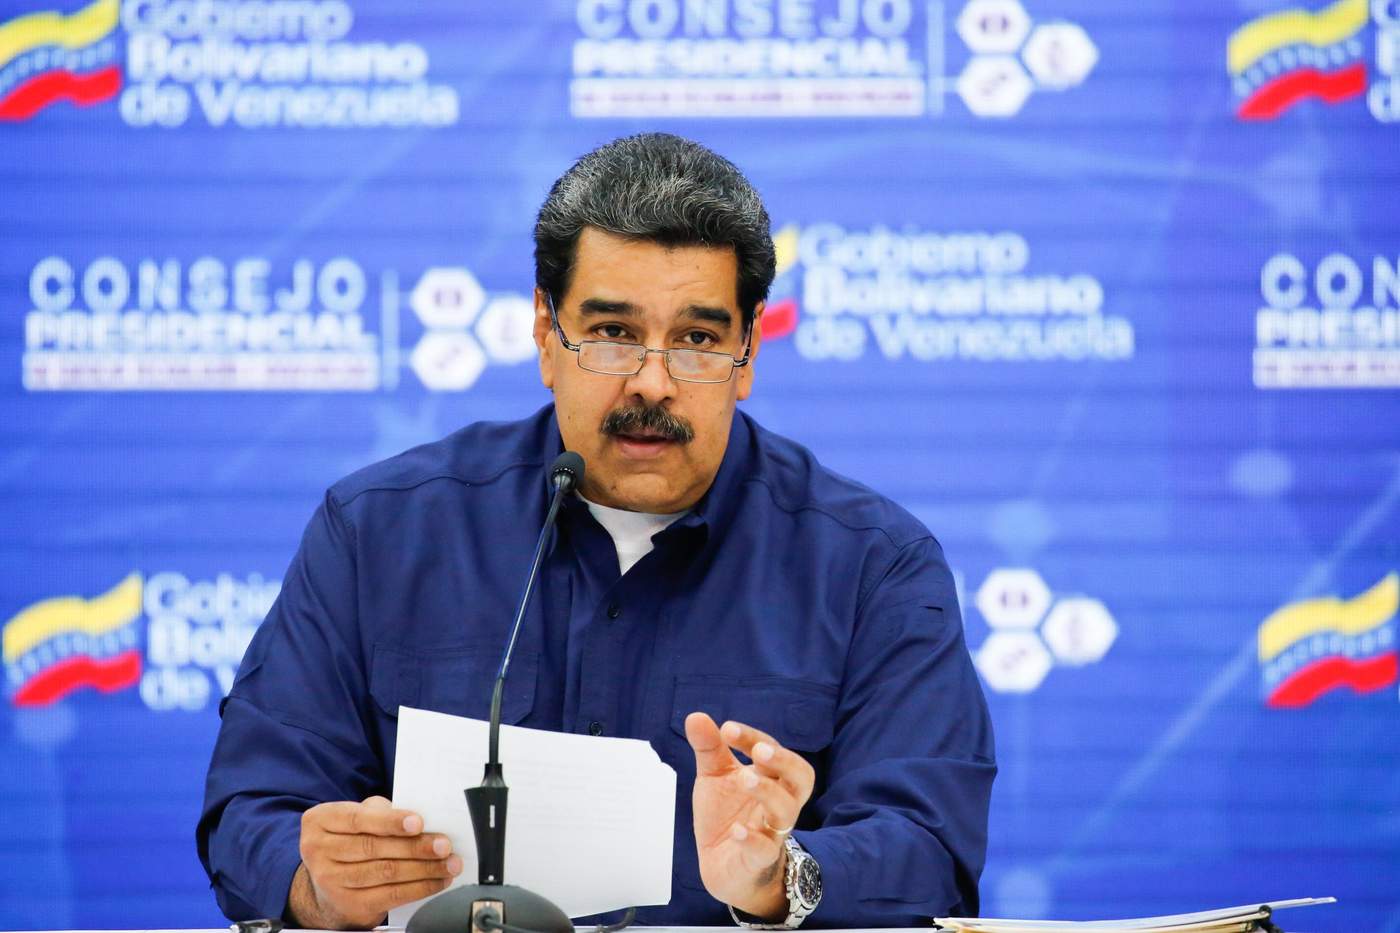 El presidente de Venezuela Nicolás Maduro informó que hoy llegarán 300 toneladas de ayuda humanitaria para el país petrolero desde Rusia. (EFE)